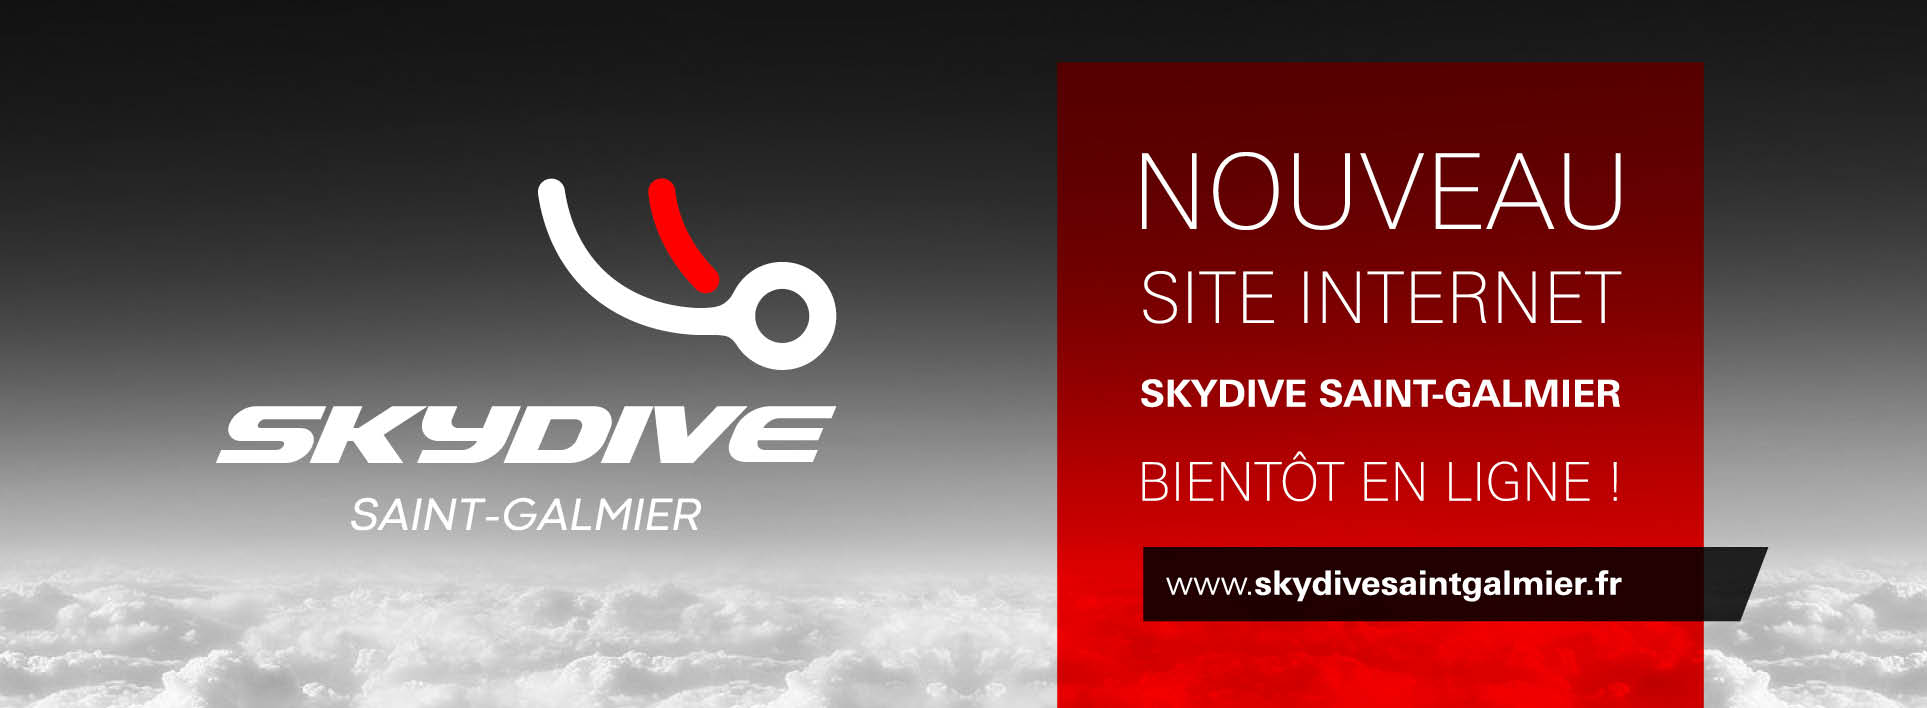 Nouveau site Internet Skydive Saint-Galmier